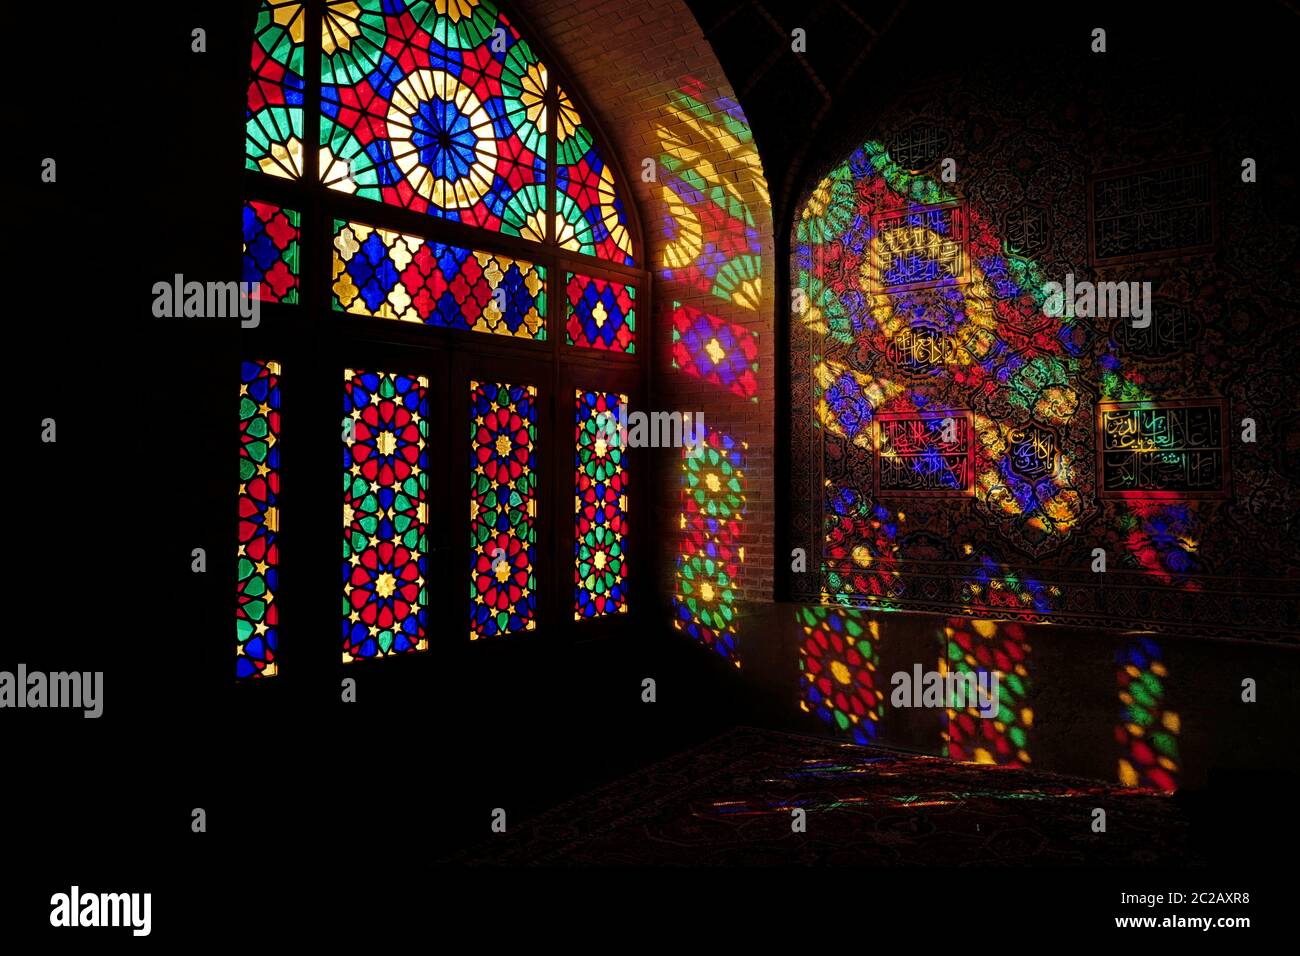 La luz de la mañana entra a través de las coloridas ventanas de vidrio de la histórica mezquita Masjed-e-Nasir-al-Molk, también conocida como la Mezquita Rosa, en Shiraz. Foto de stock